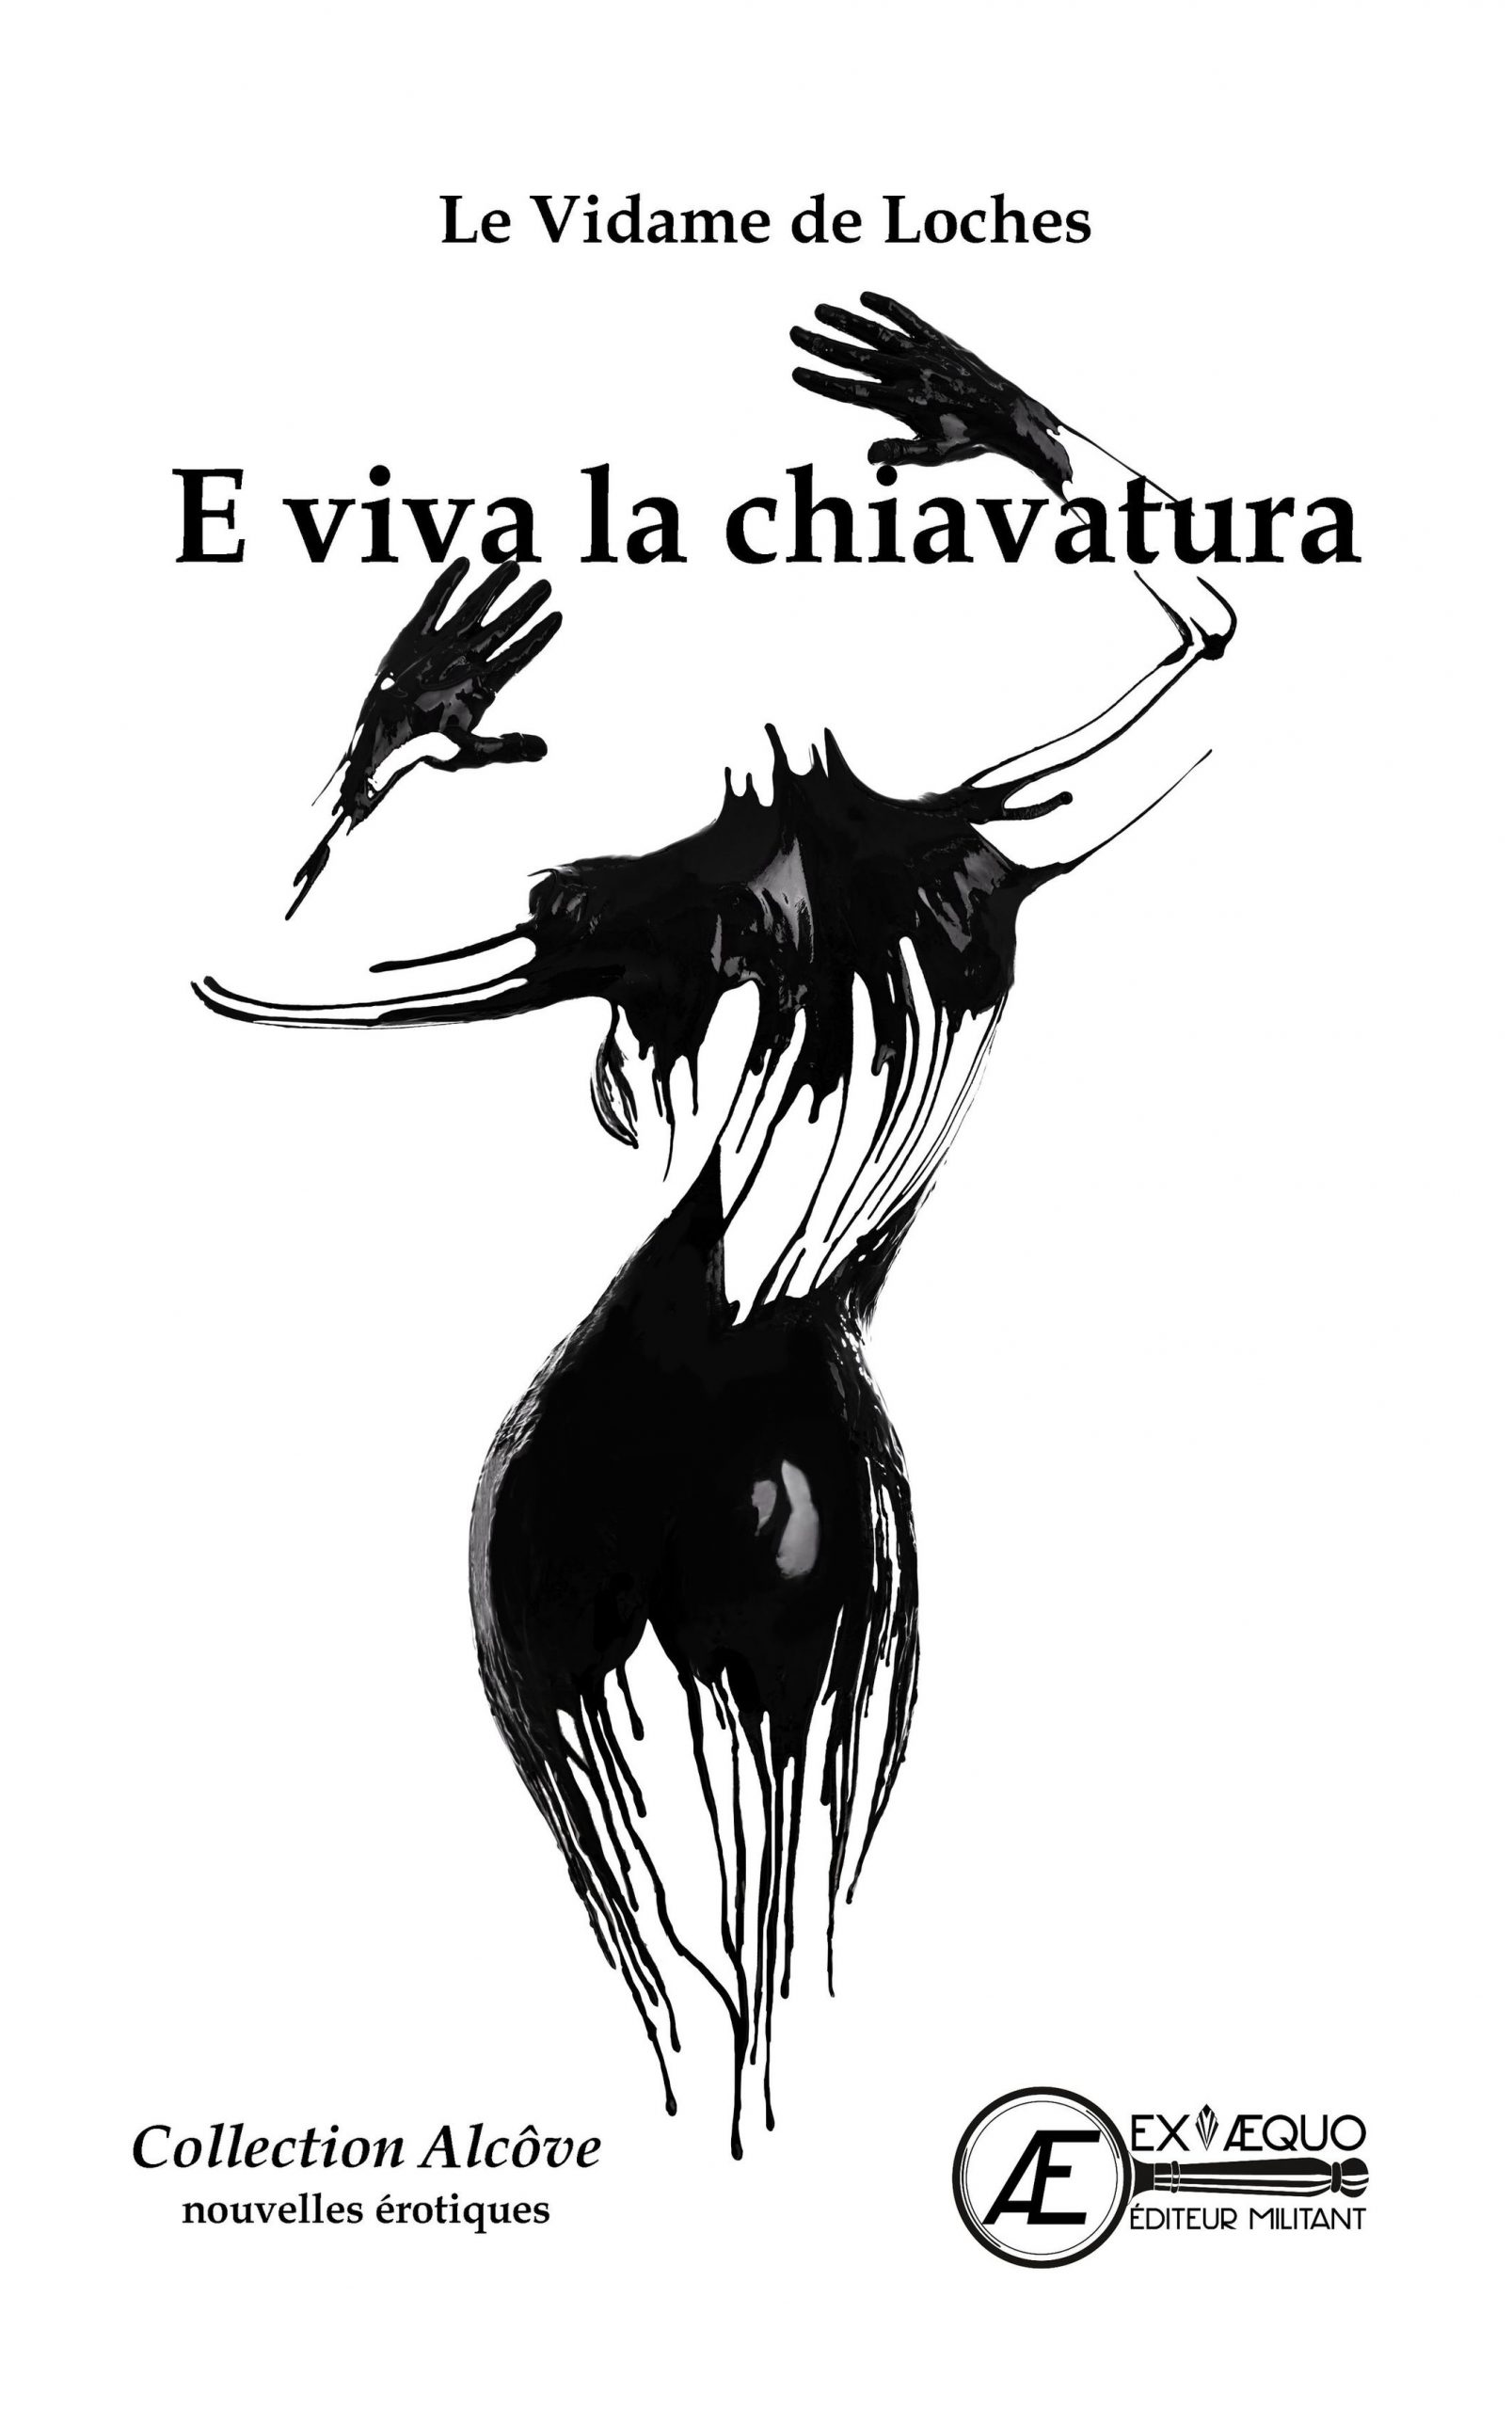 You are currently viewing E Viva la chiavatura, de Le vidame de Loches